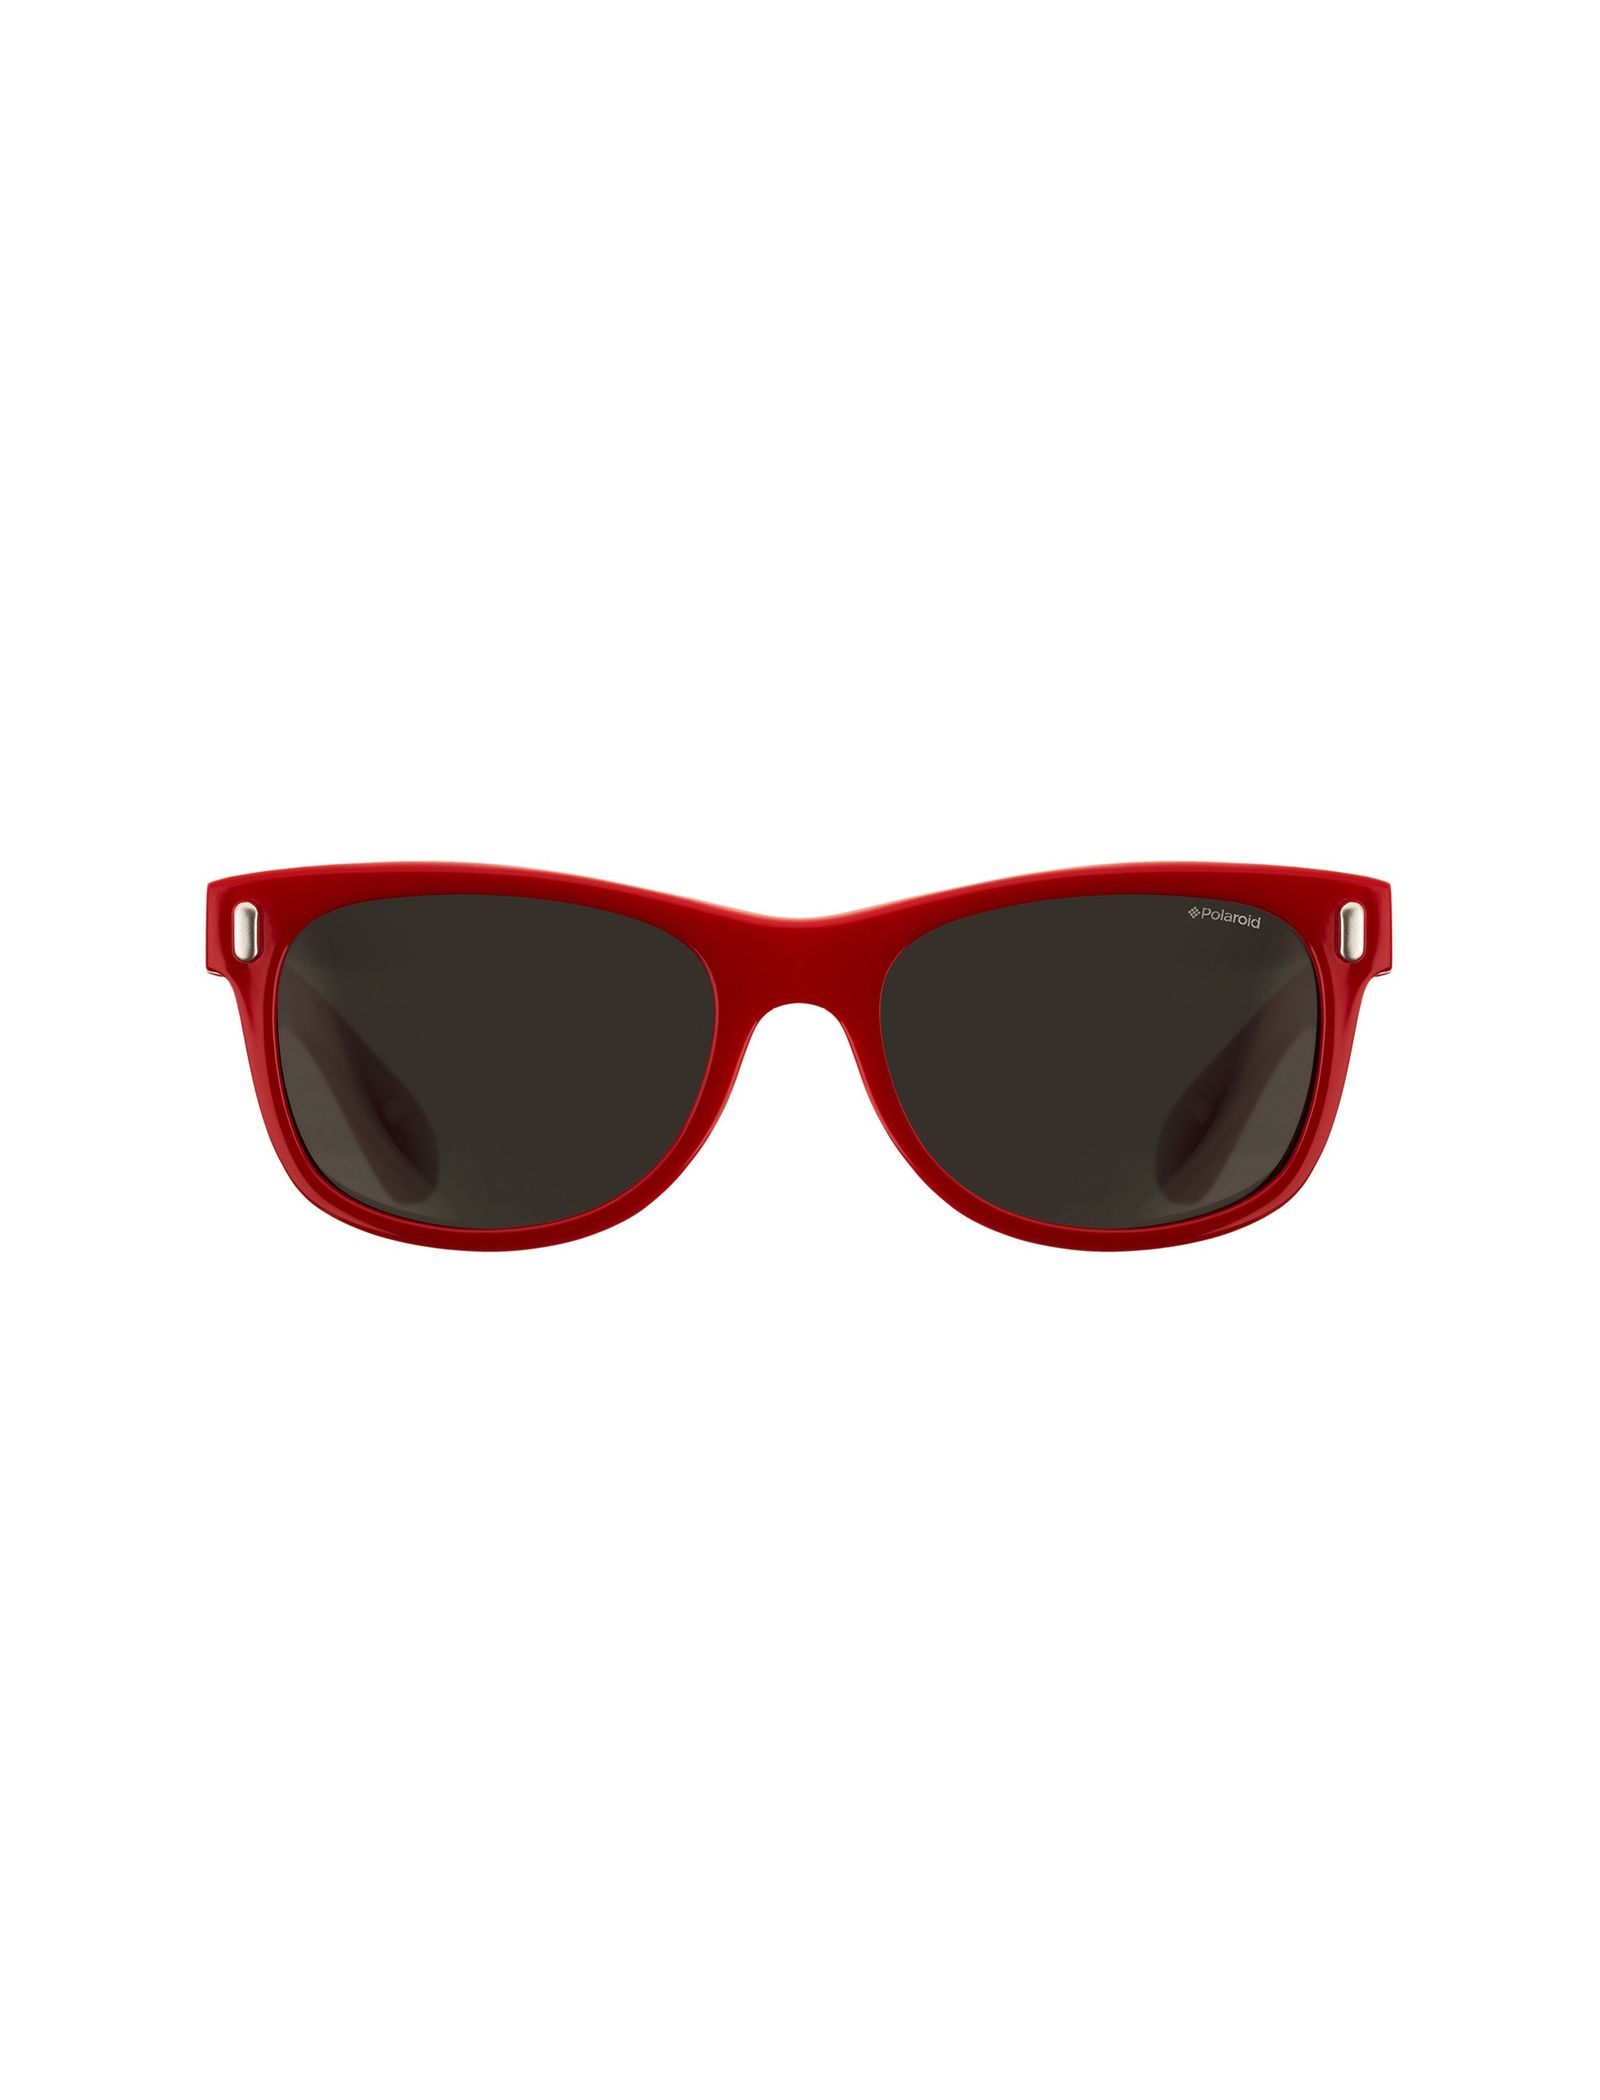 عینک آفتابی ویفرر بچگانه - پولاروید - قرمز - 2